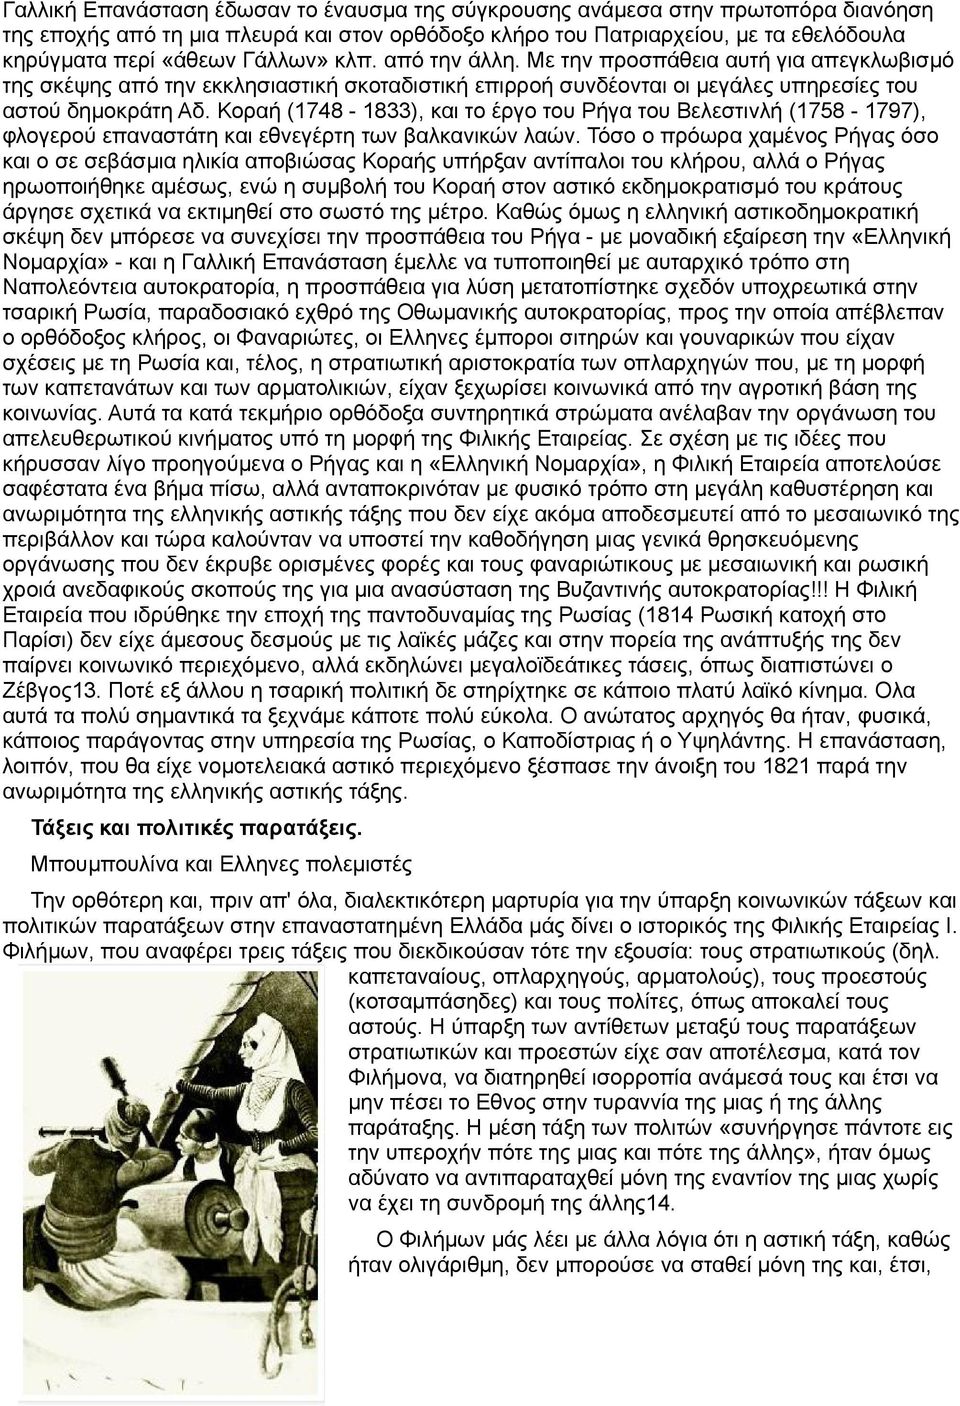 Κοραή (1748-1833), και το έργο του Ρήγα του Βελεστινλή (1758-1797), φλογερού επαναστάτη και εθνεγέρτη των βαλκανικών λαών.